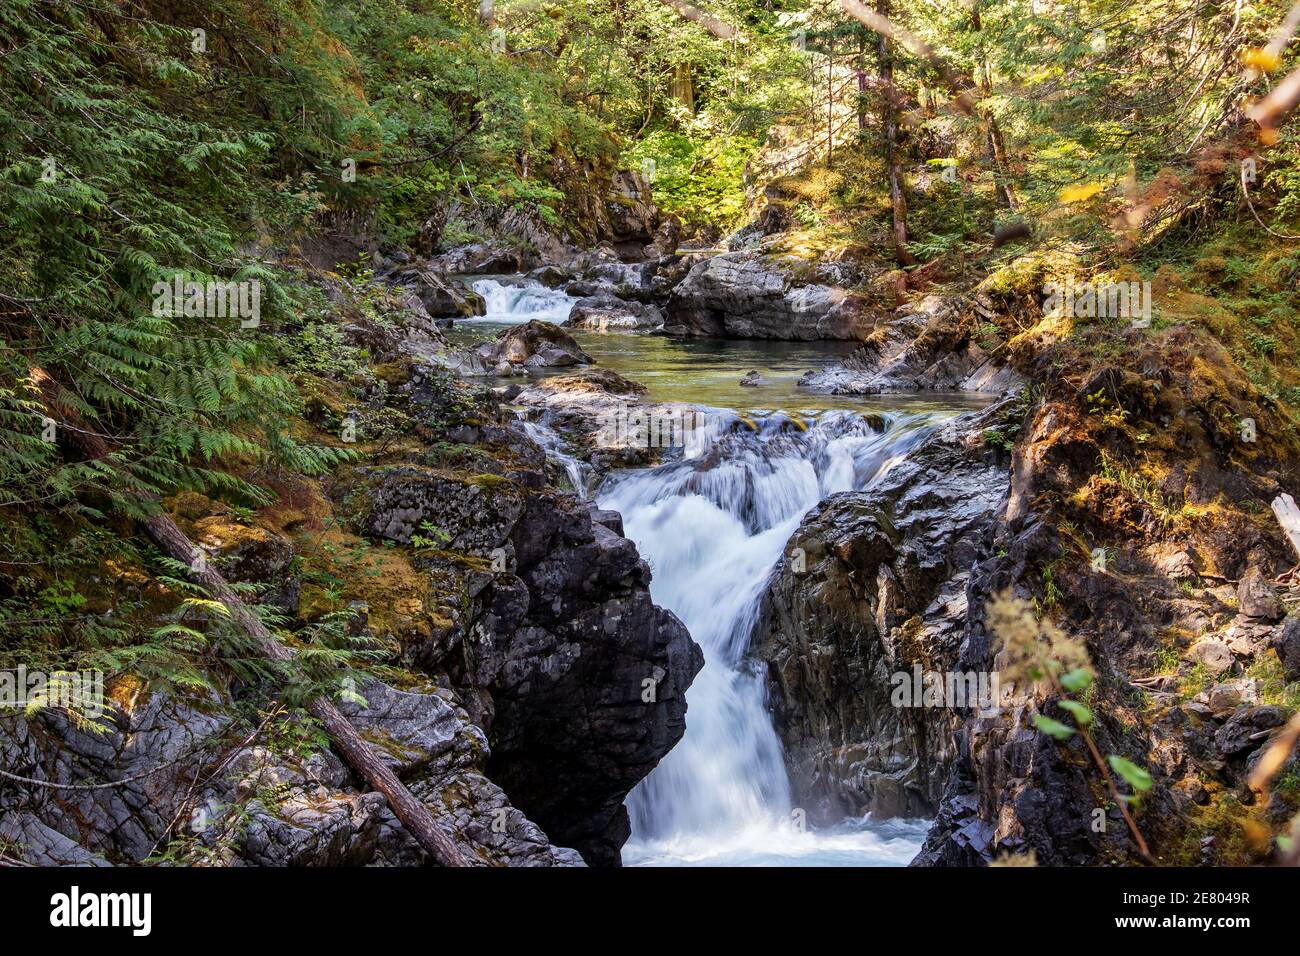 Tesoro nascosto della natura, Qualicum Falls, Vancouver Island, BC, Canada. Le Cascate di Qualicum sono una delle attrazioni dell'Isola di Vancouver in BC, Canad Foto Stock